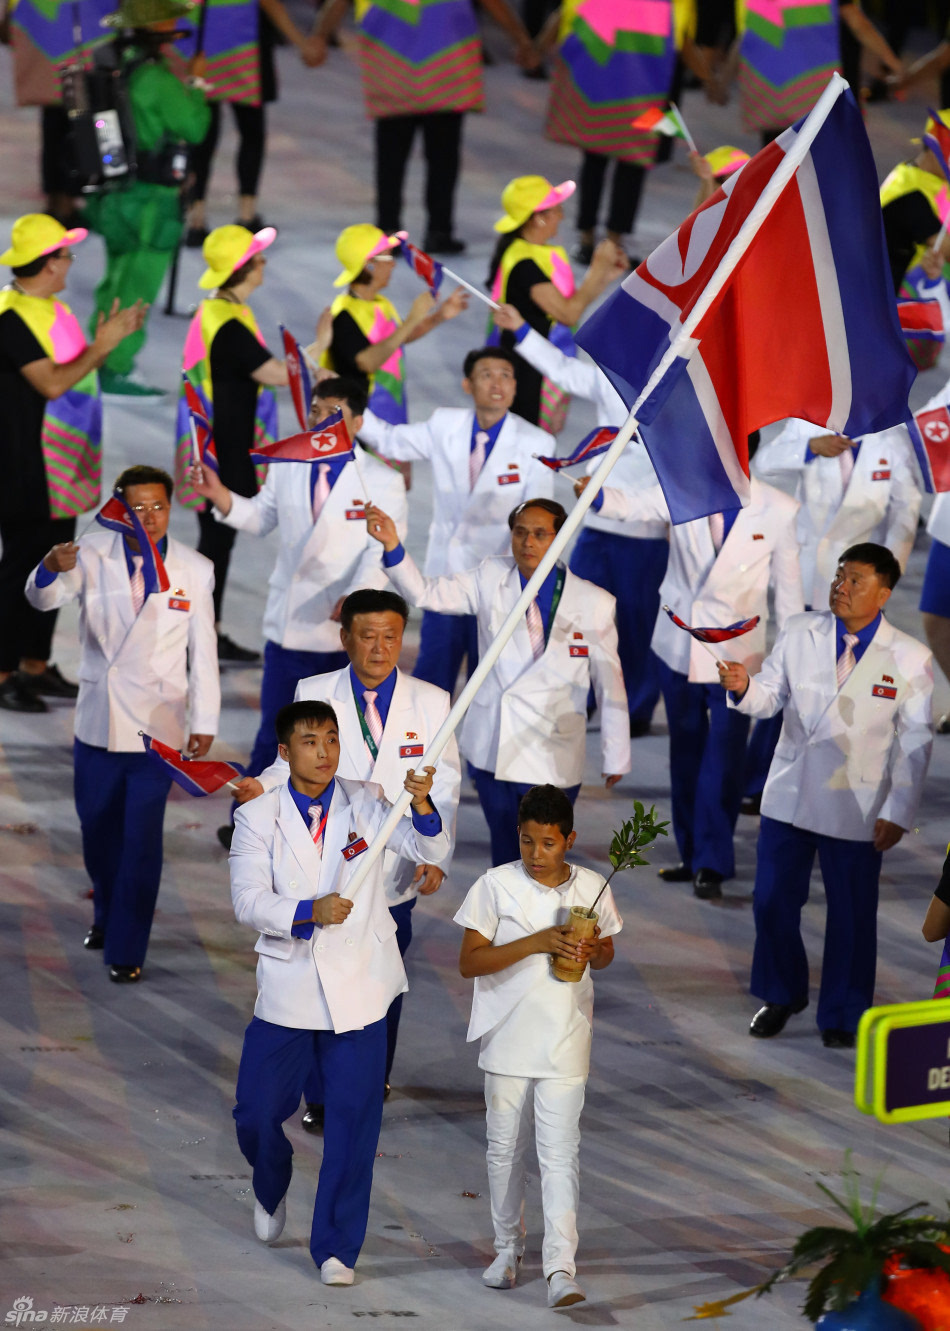 北京时间2016年8月6日,里约奥运会正式开幕,聚焦各国运动员进场仪式.